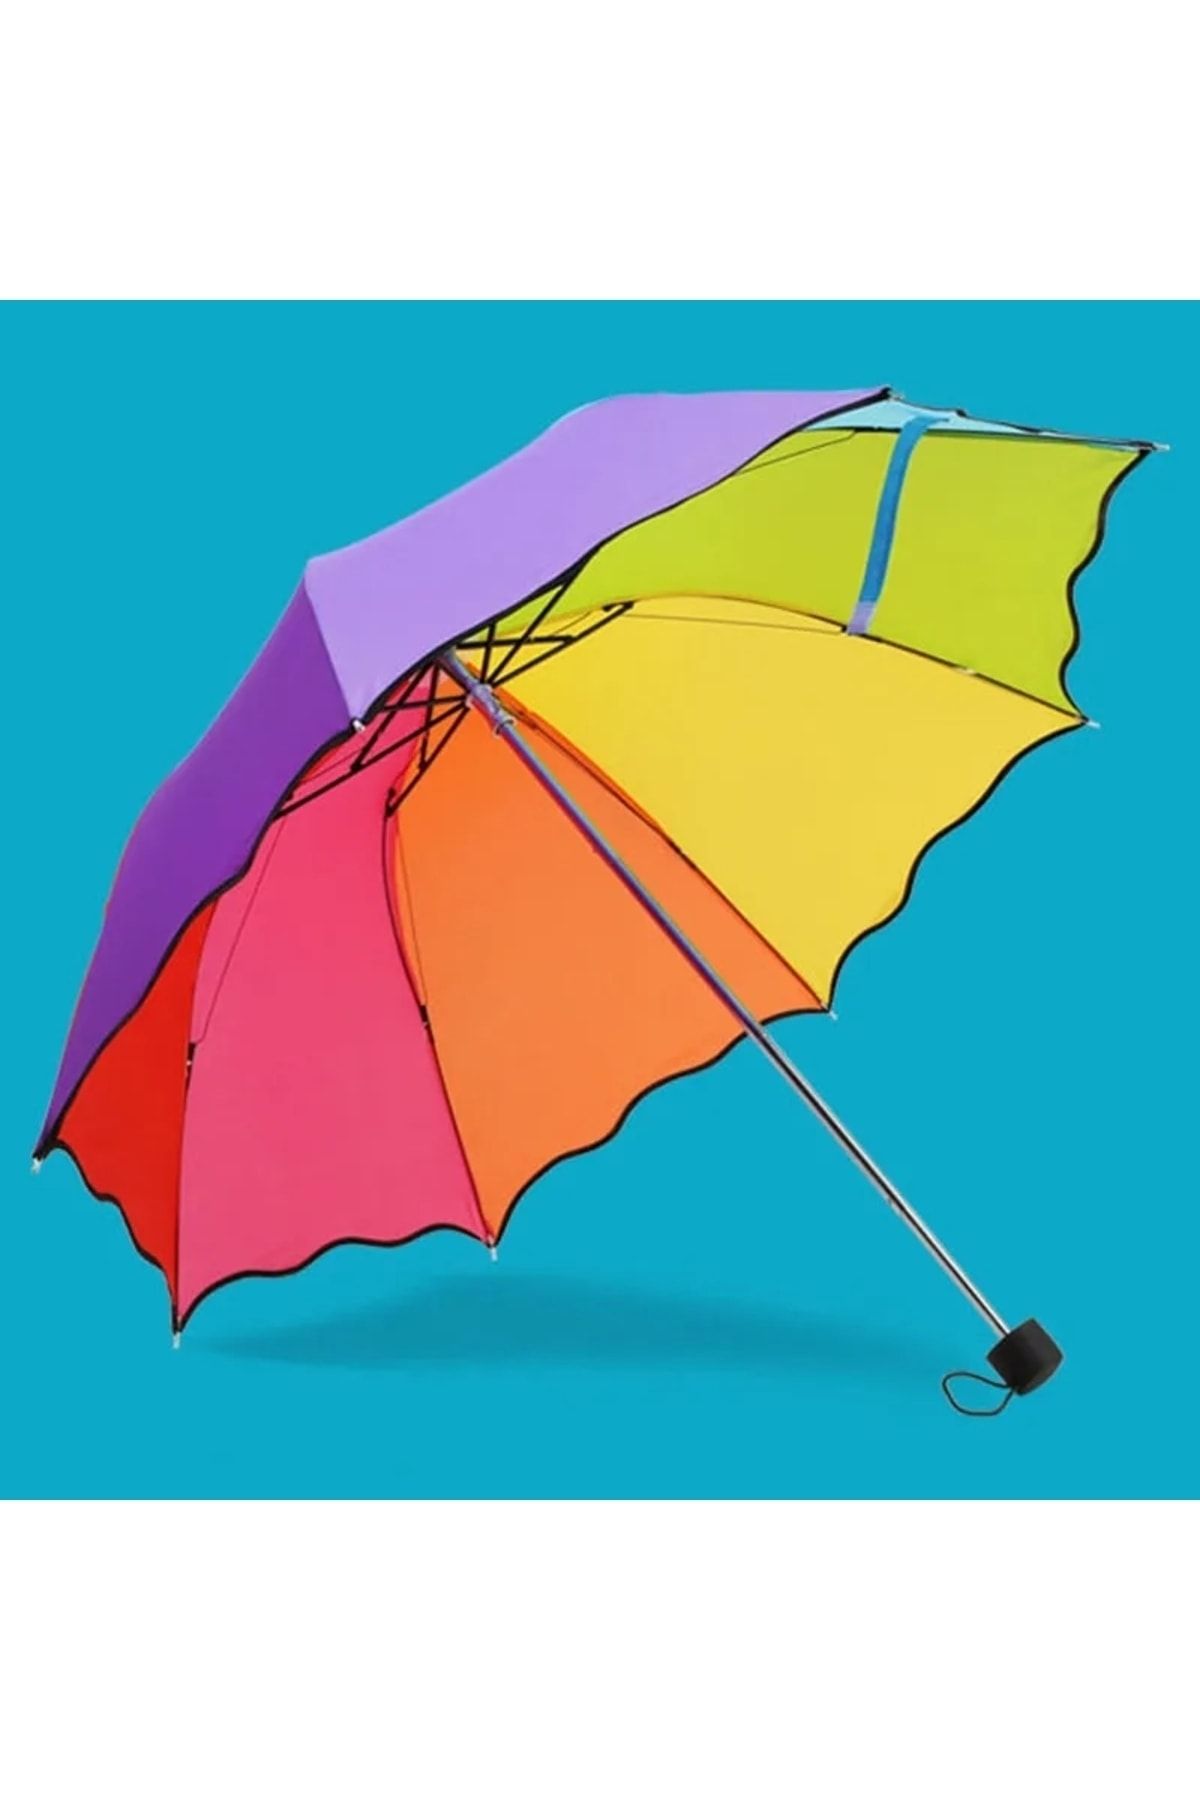 AVİPOLES Şemsiye Gökkuşağı Yarasa Şemsiye 8 Tel Manuel Şemsiye Rüzgarda Kırılmaz Puantiyeli Gökkuşağı Şemsiye